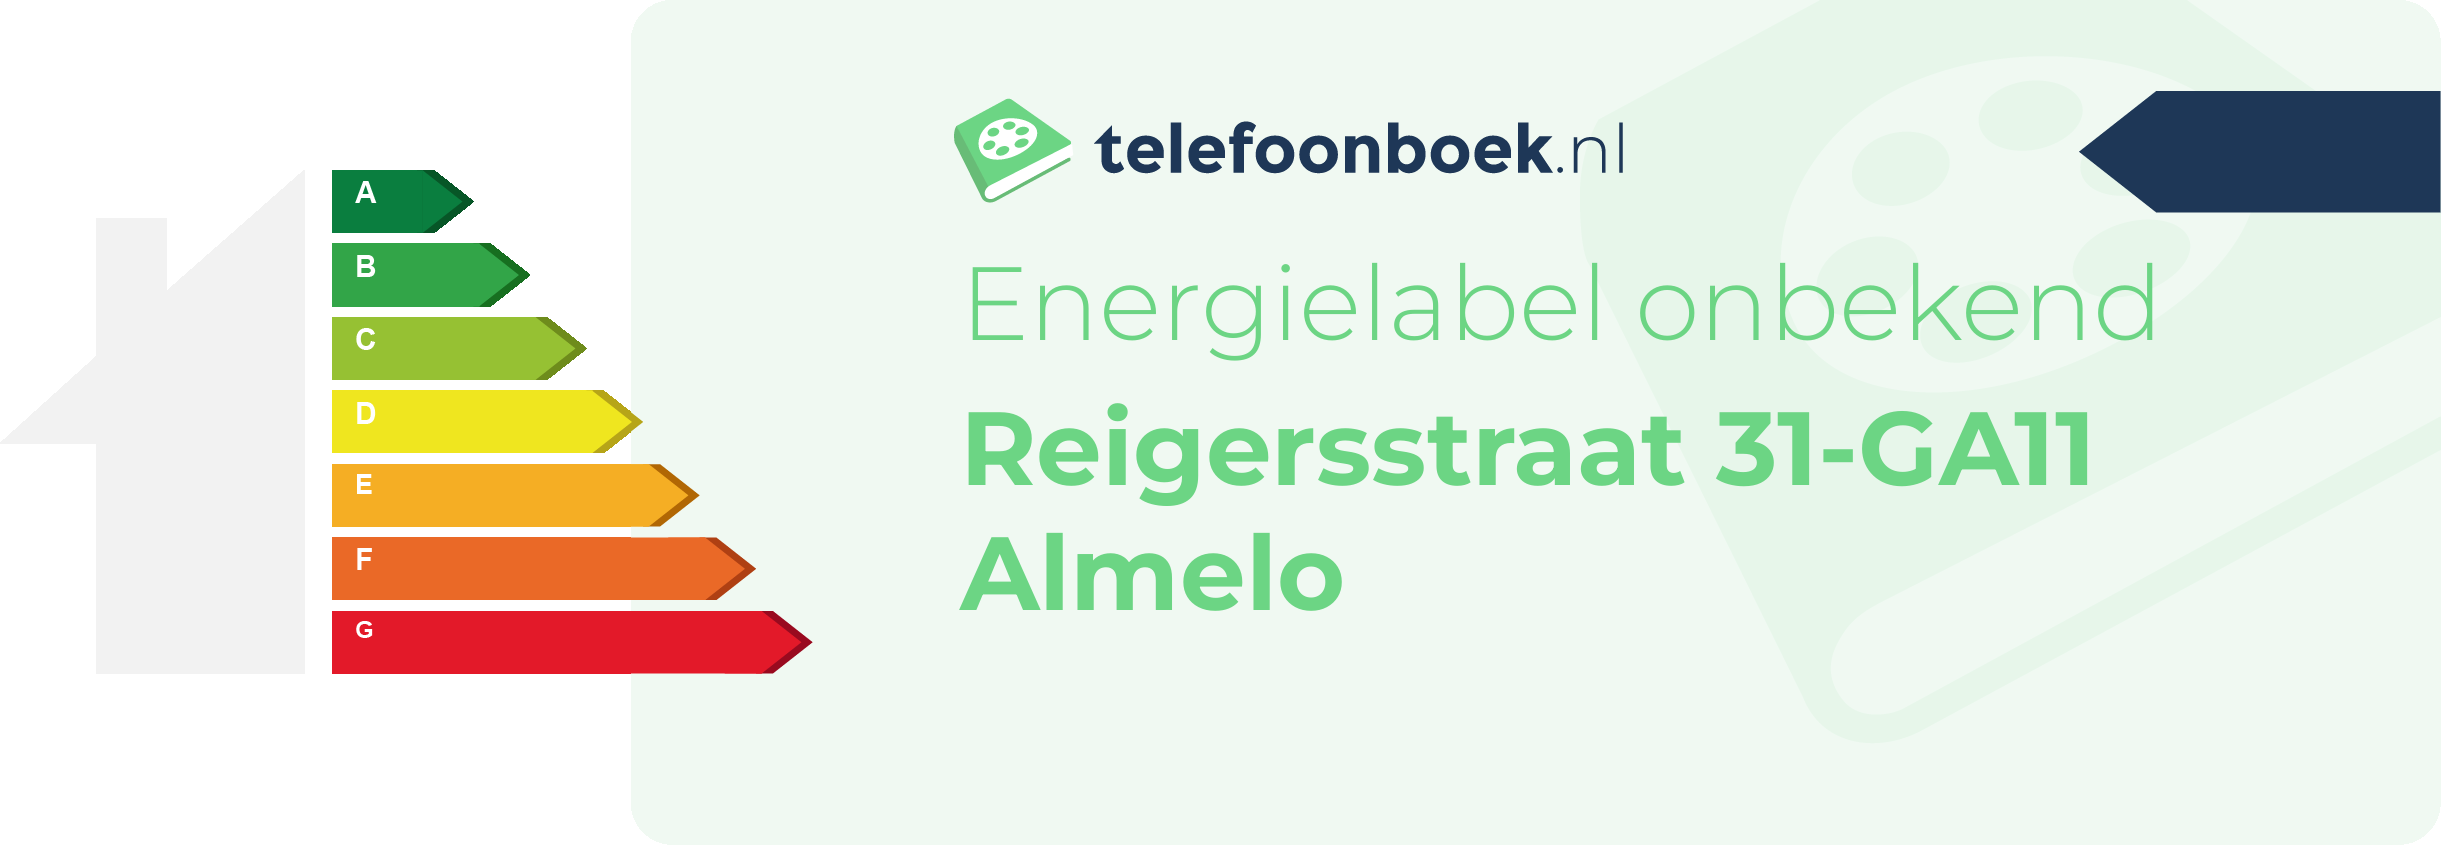 Energielabel Reigersstraat 31-GA11 Almelo